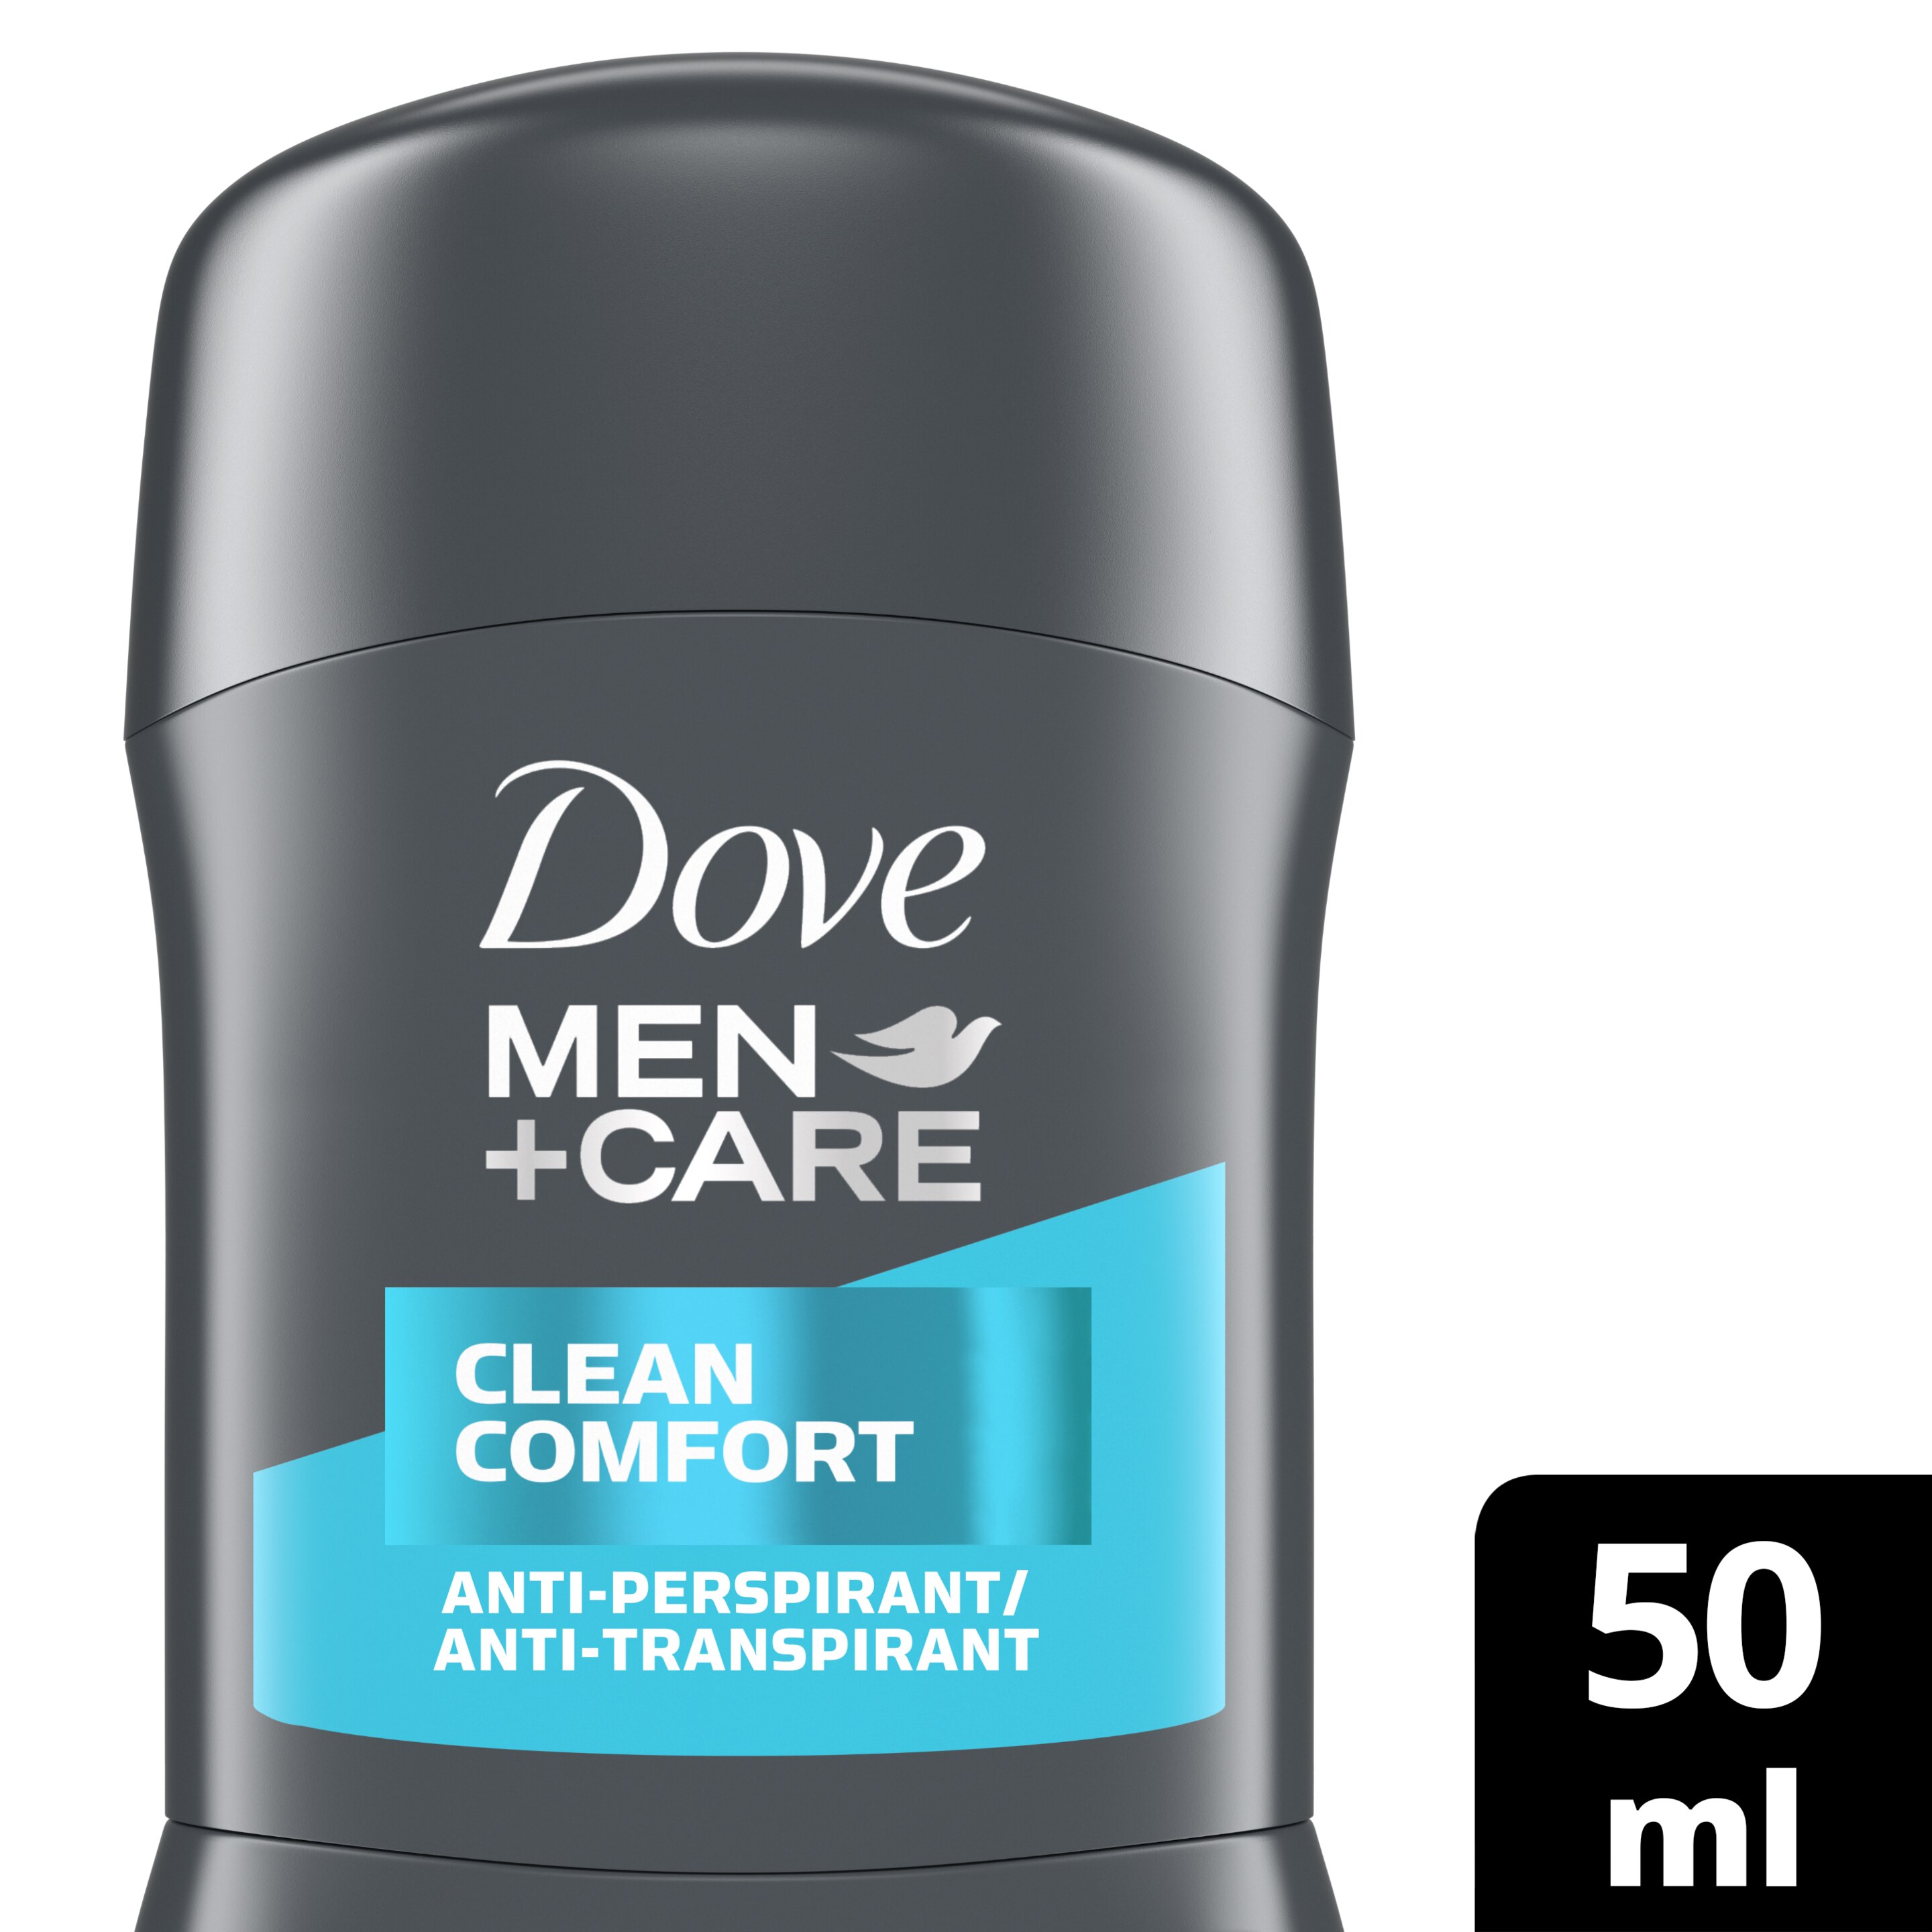 Men+Care Clean Comfort Deodorant Stick